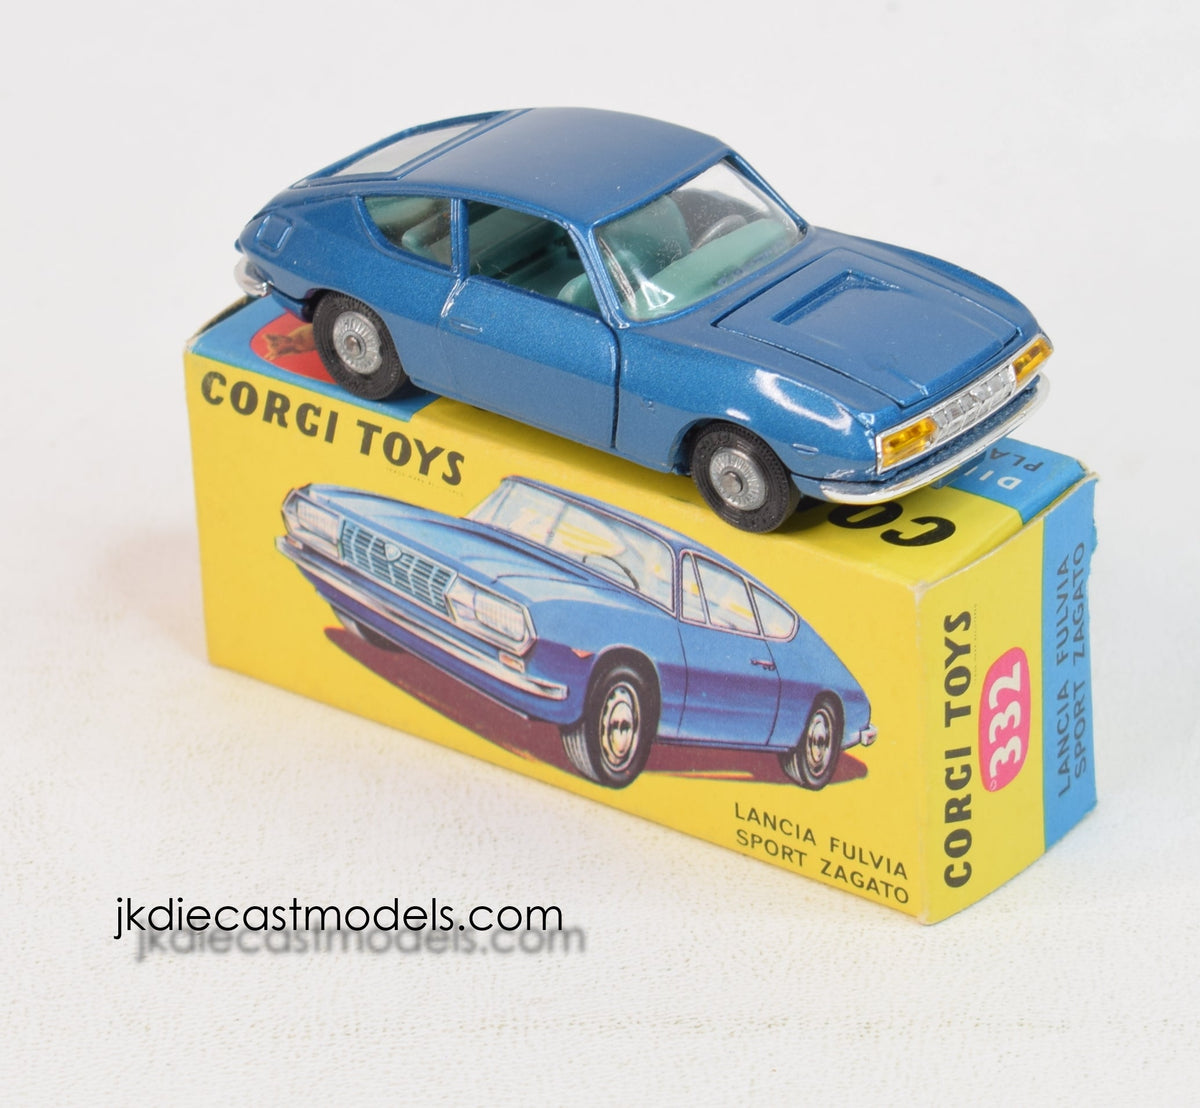 Corgi toys 332 Lancia Fulvia Sport Virtually Mint/Boxed 'Blue & Yellow' Collection